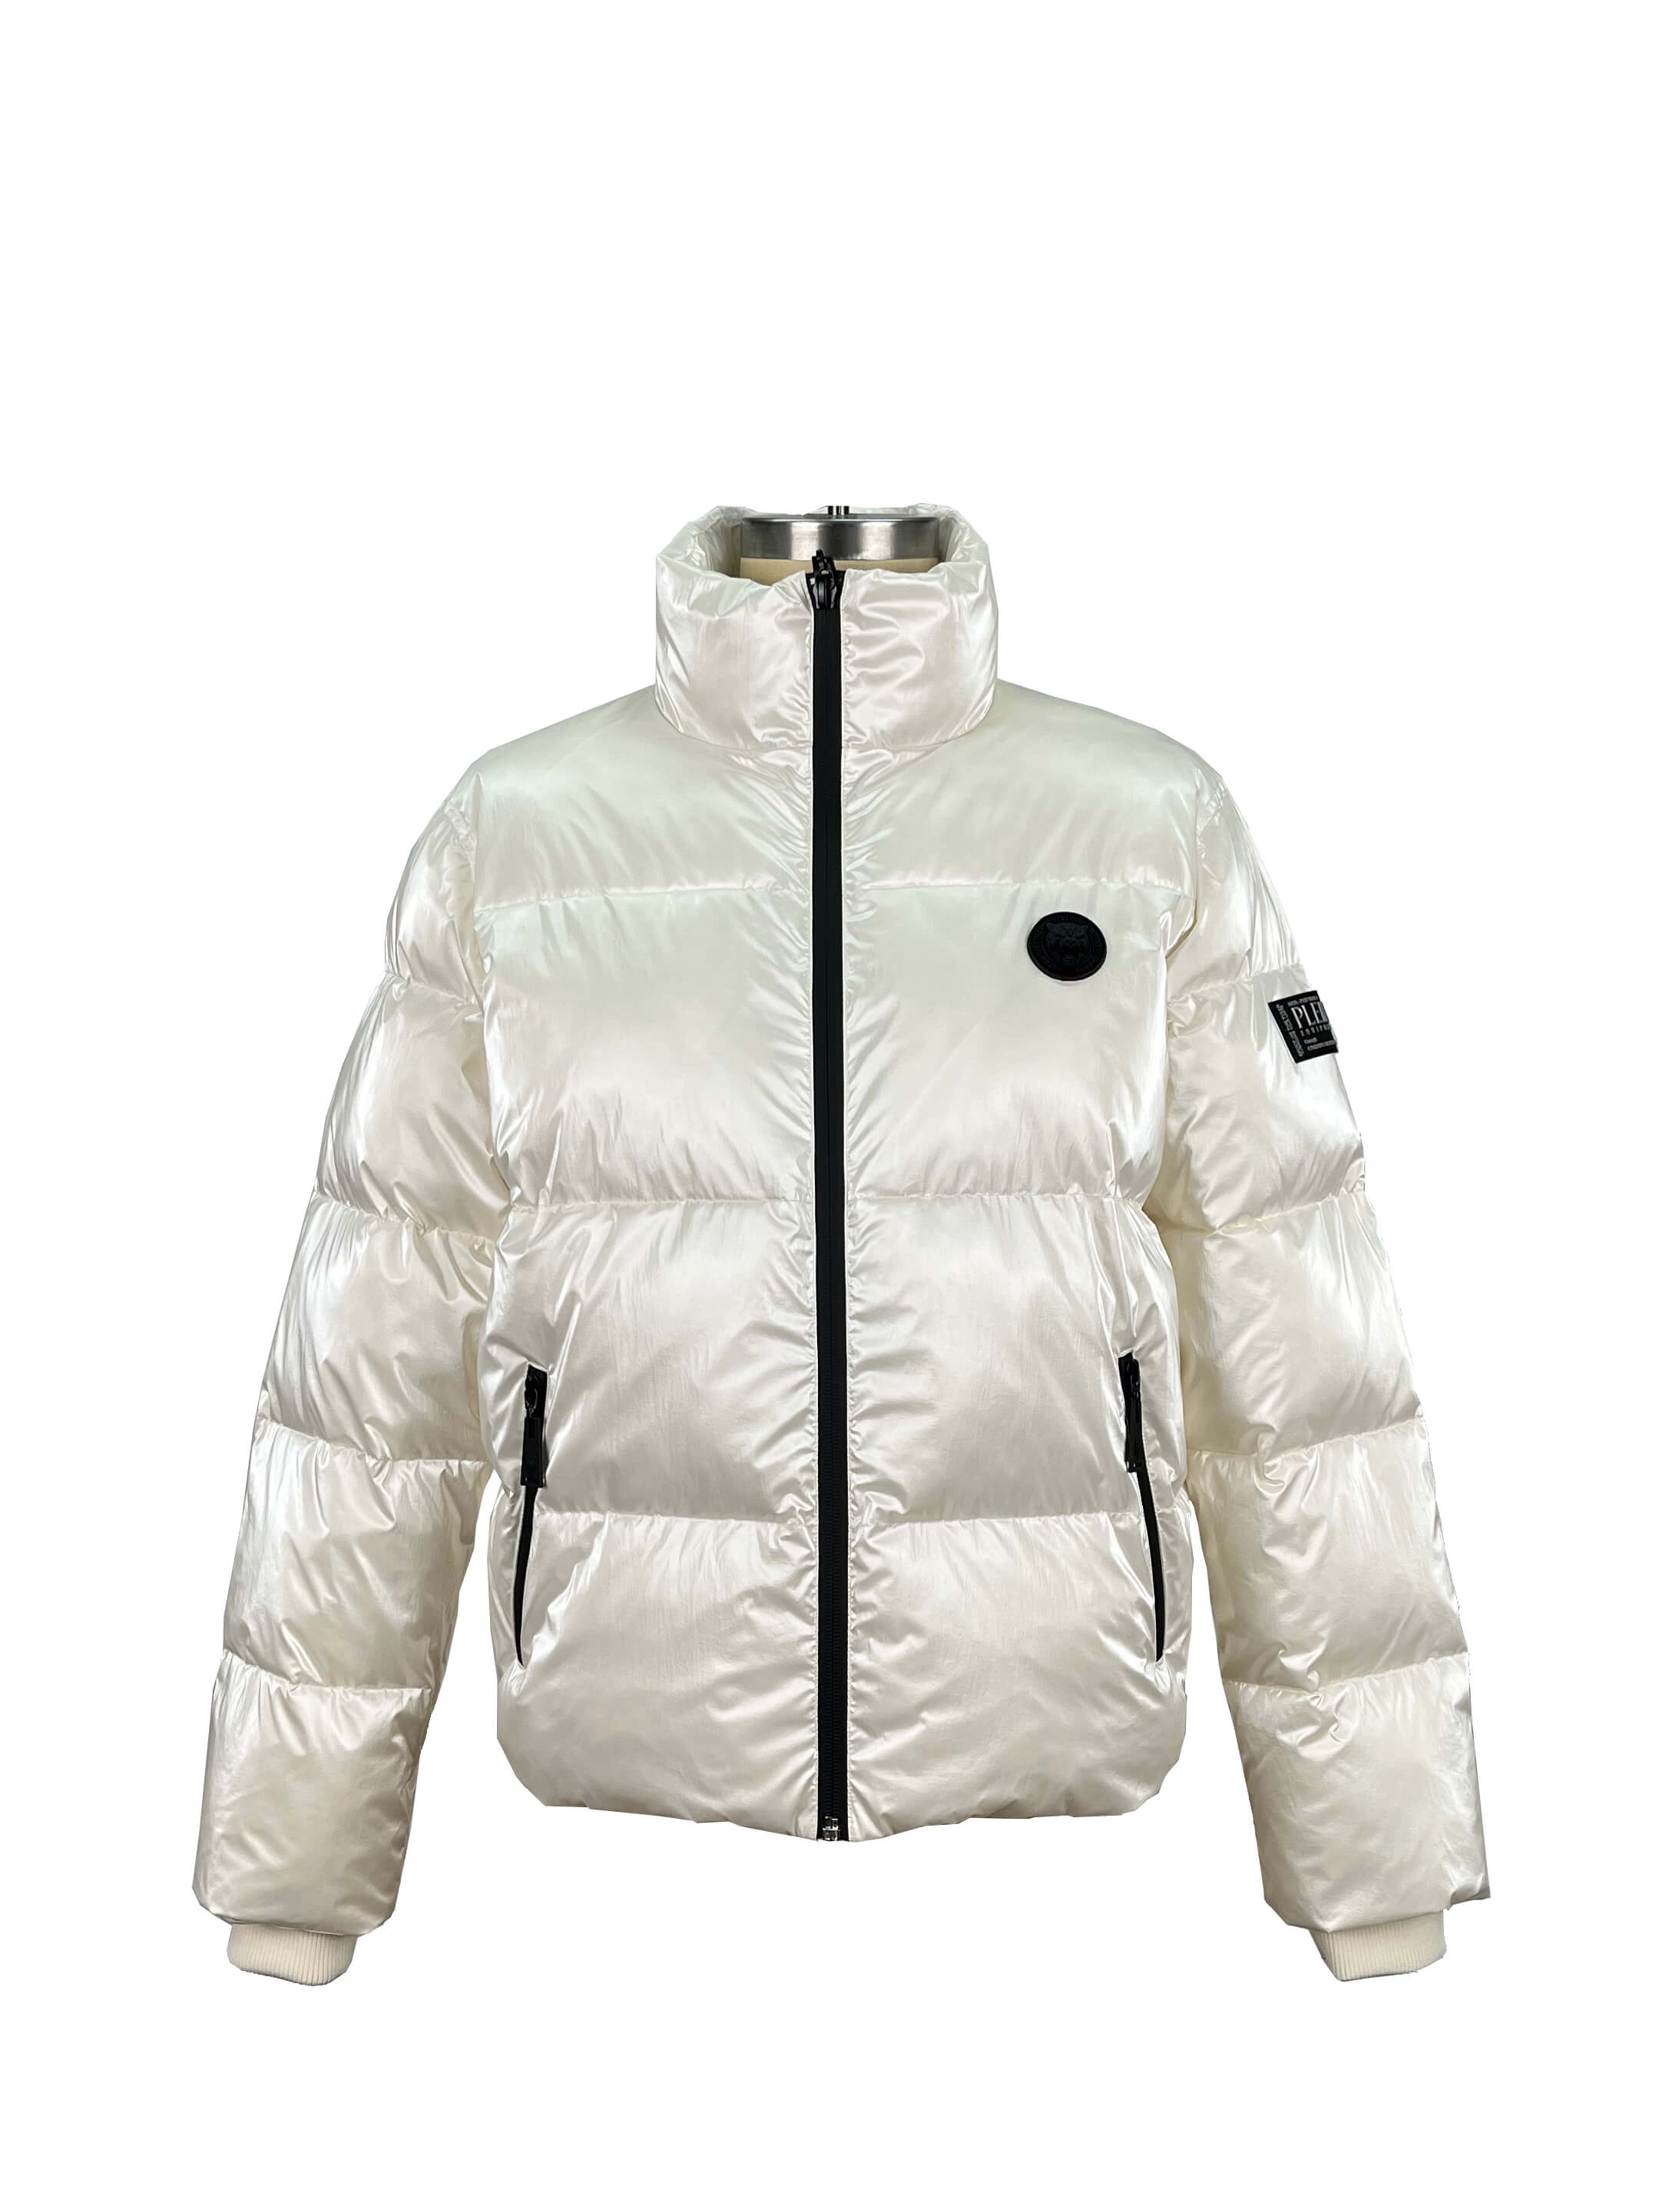 4.padded jacket (1)